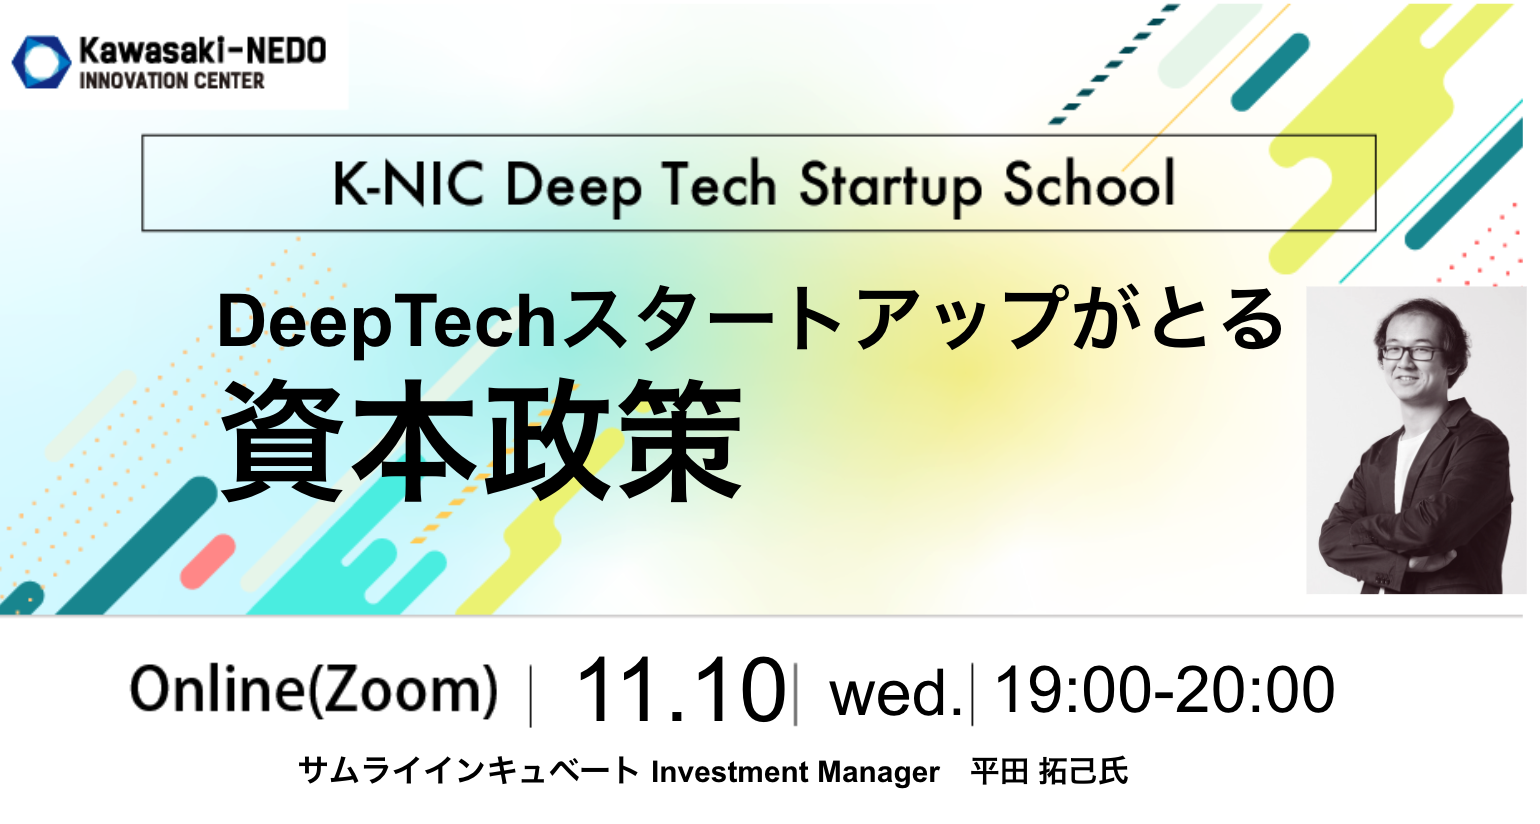 【11/10開催】K-NIC Deep Tech Startup School スタートアップが行う資本政策